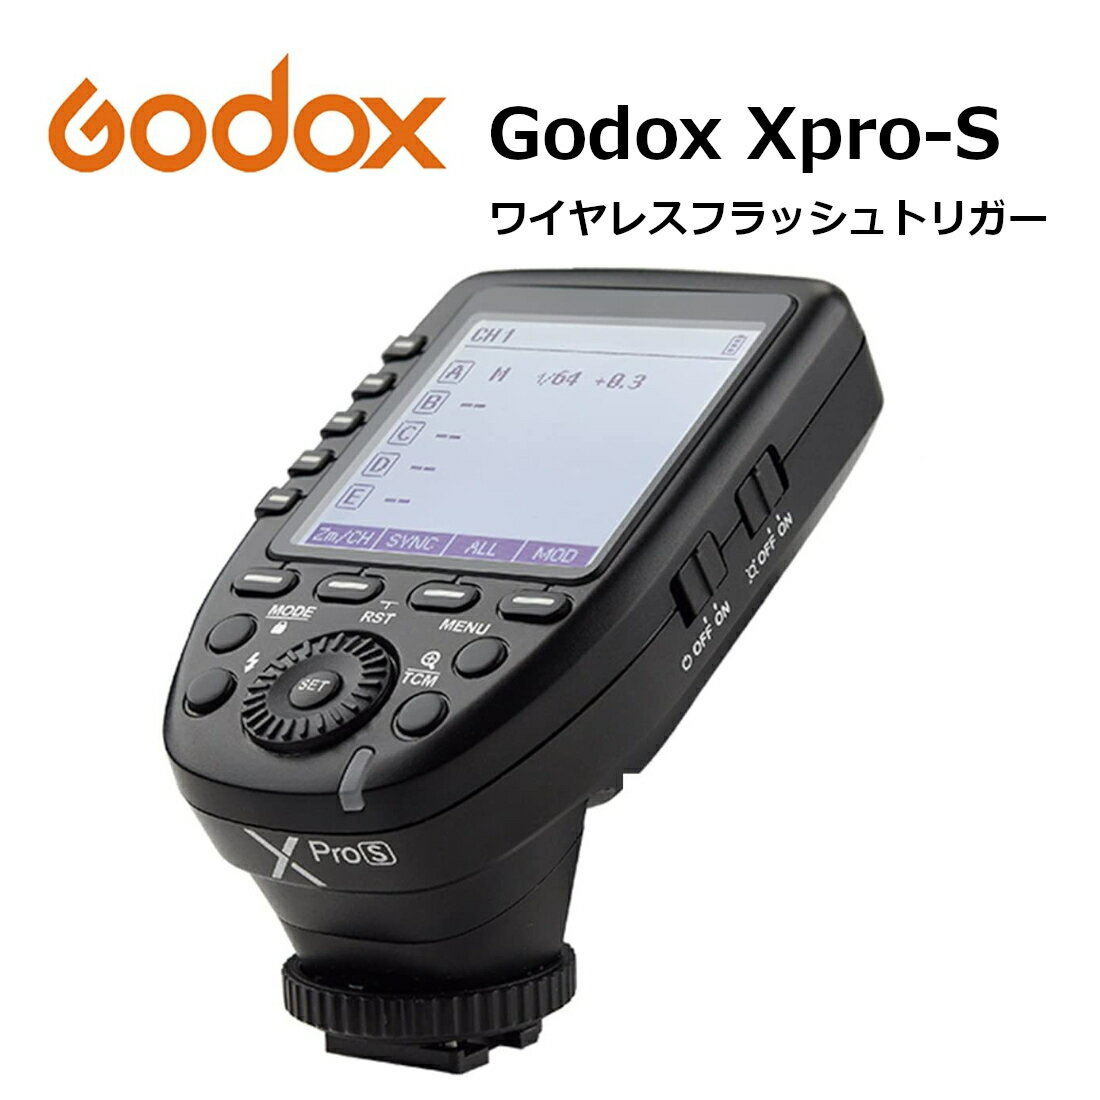 日本正規代理店 Godox Xpro-S 送信機 TTL 2.4Gワイヤレスフラッシュトリガー 高速同期 1/8000s 大画面 LCD スクリーントランスミッタ 互換性 Sony ソニー カメラ用